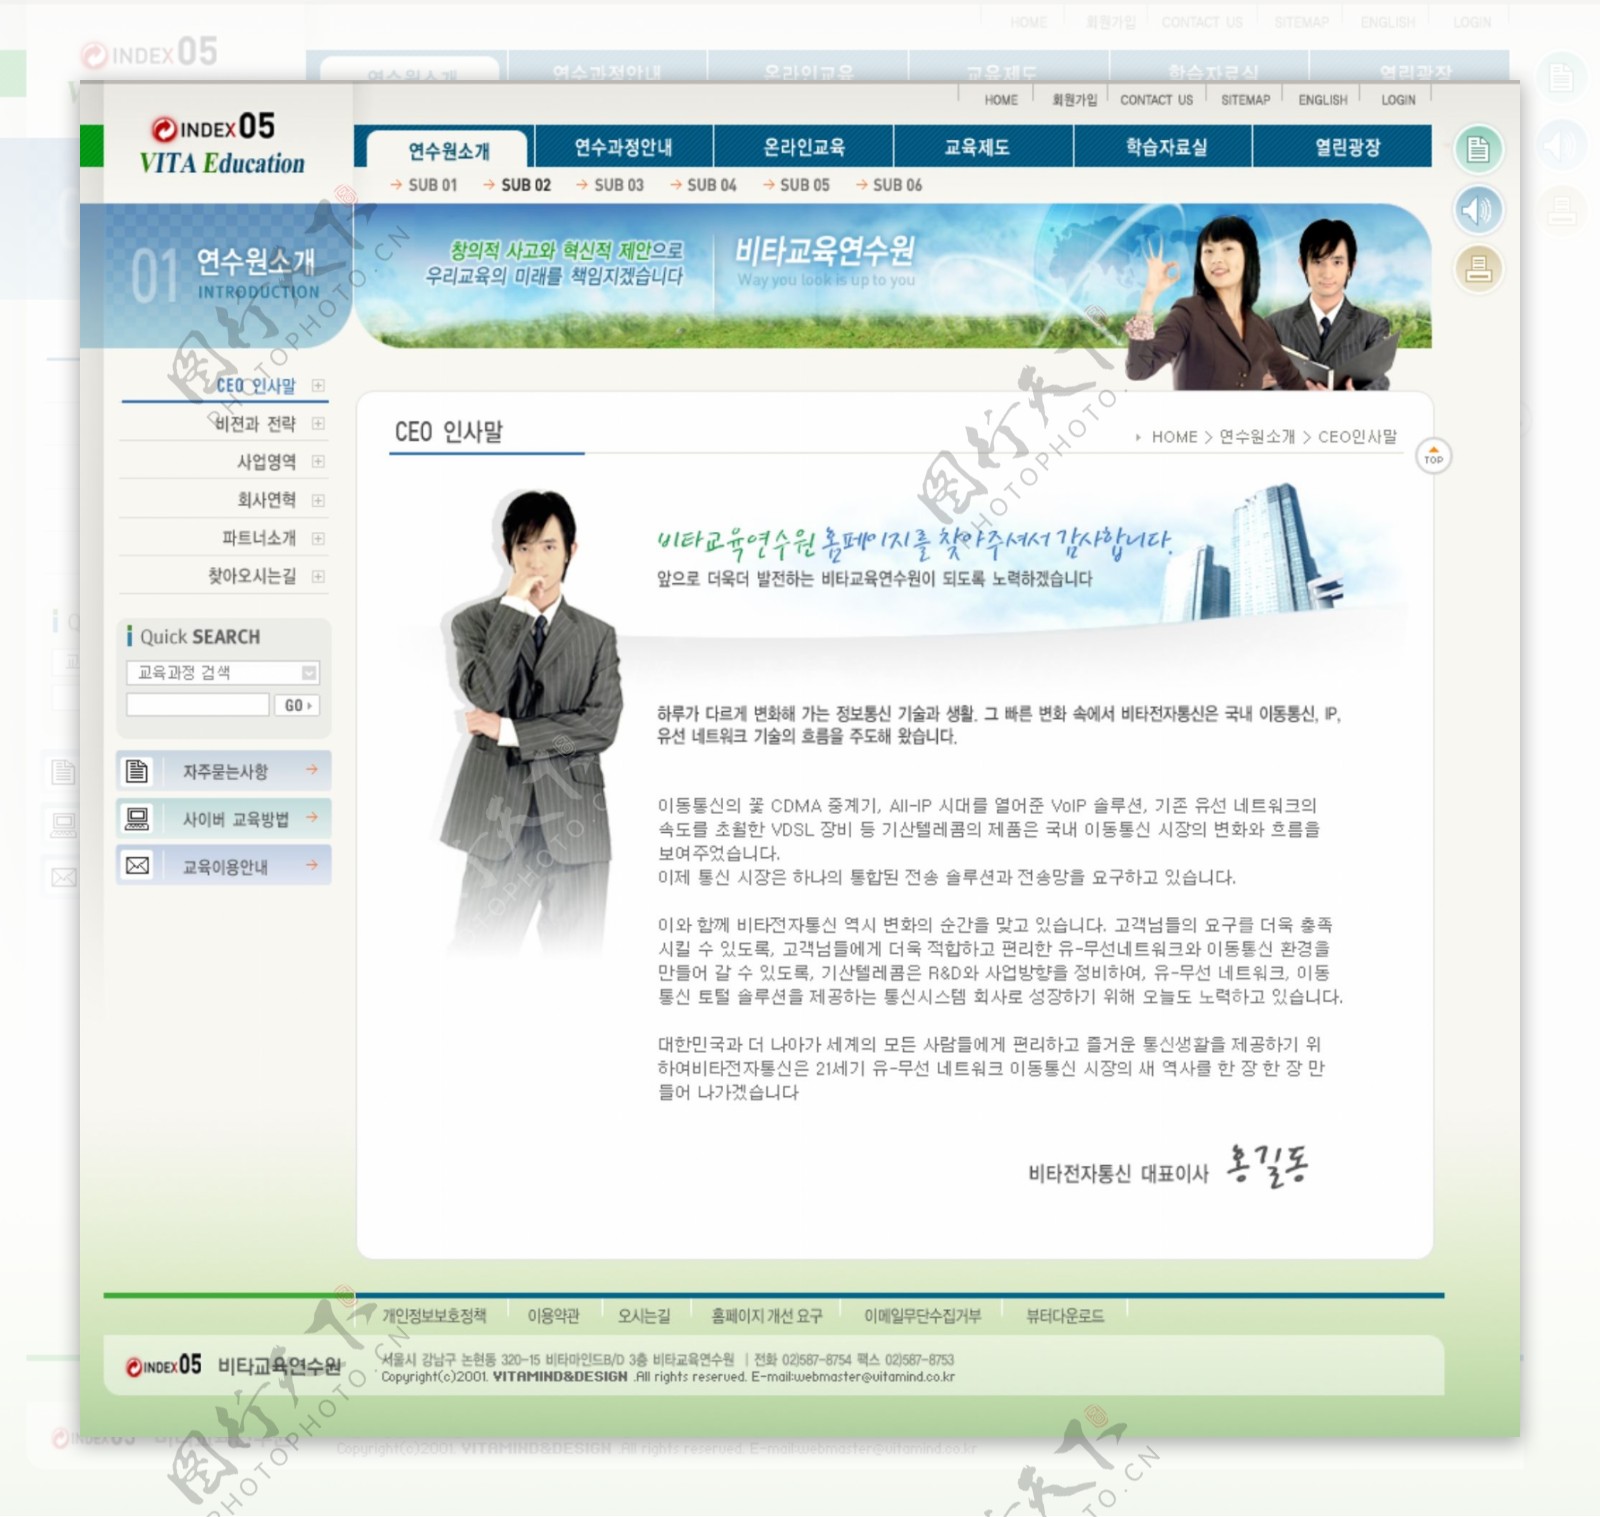 韩国企业网站模板分层素材PSD格式0293